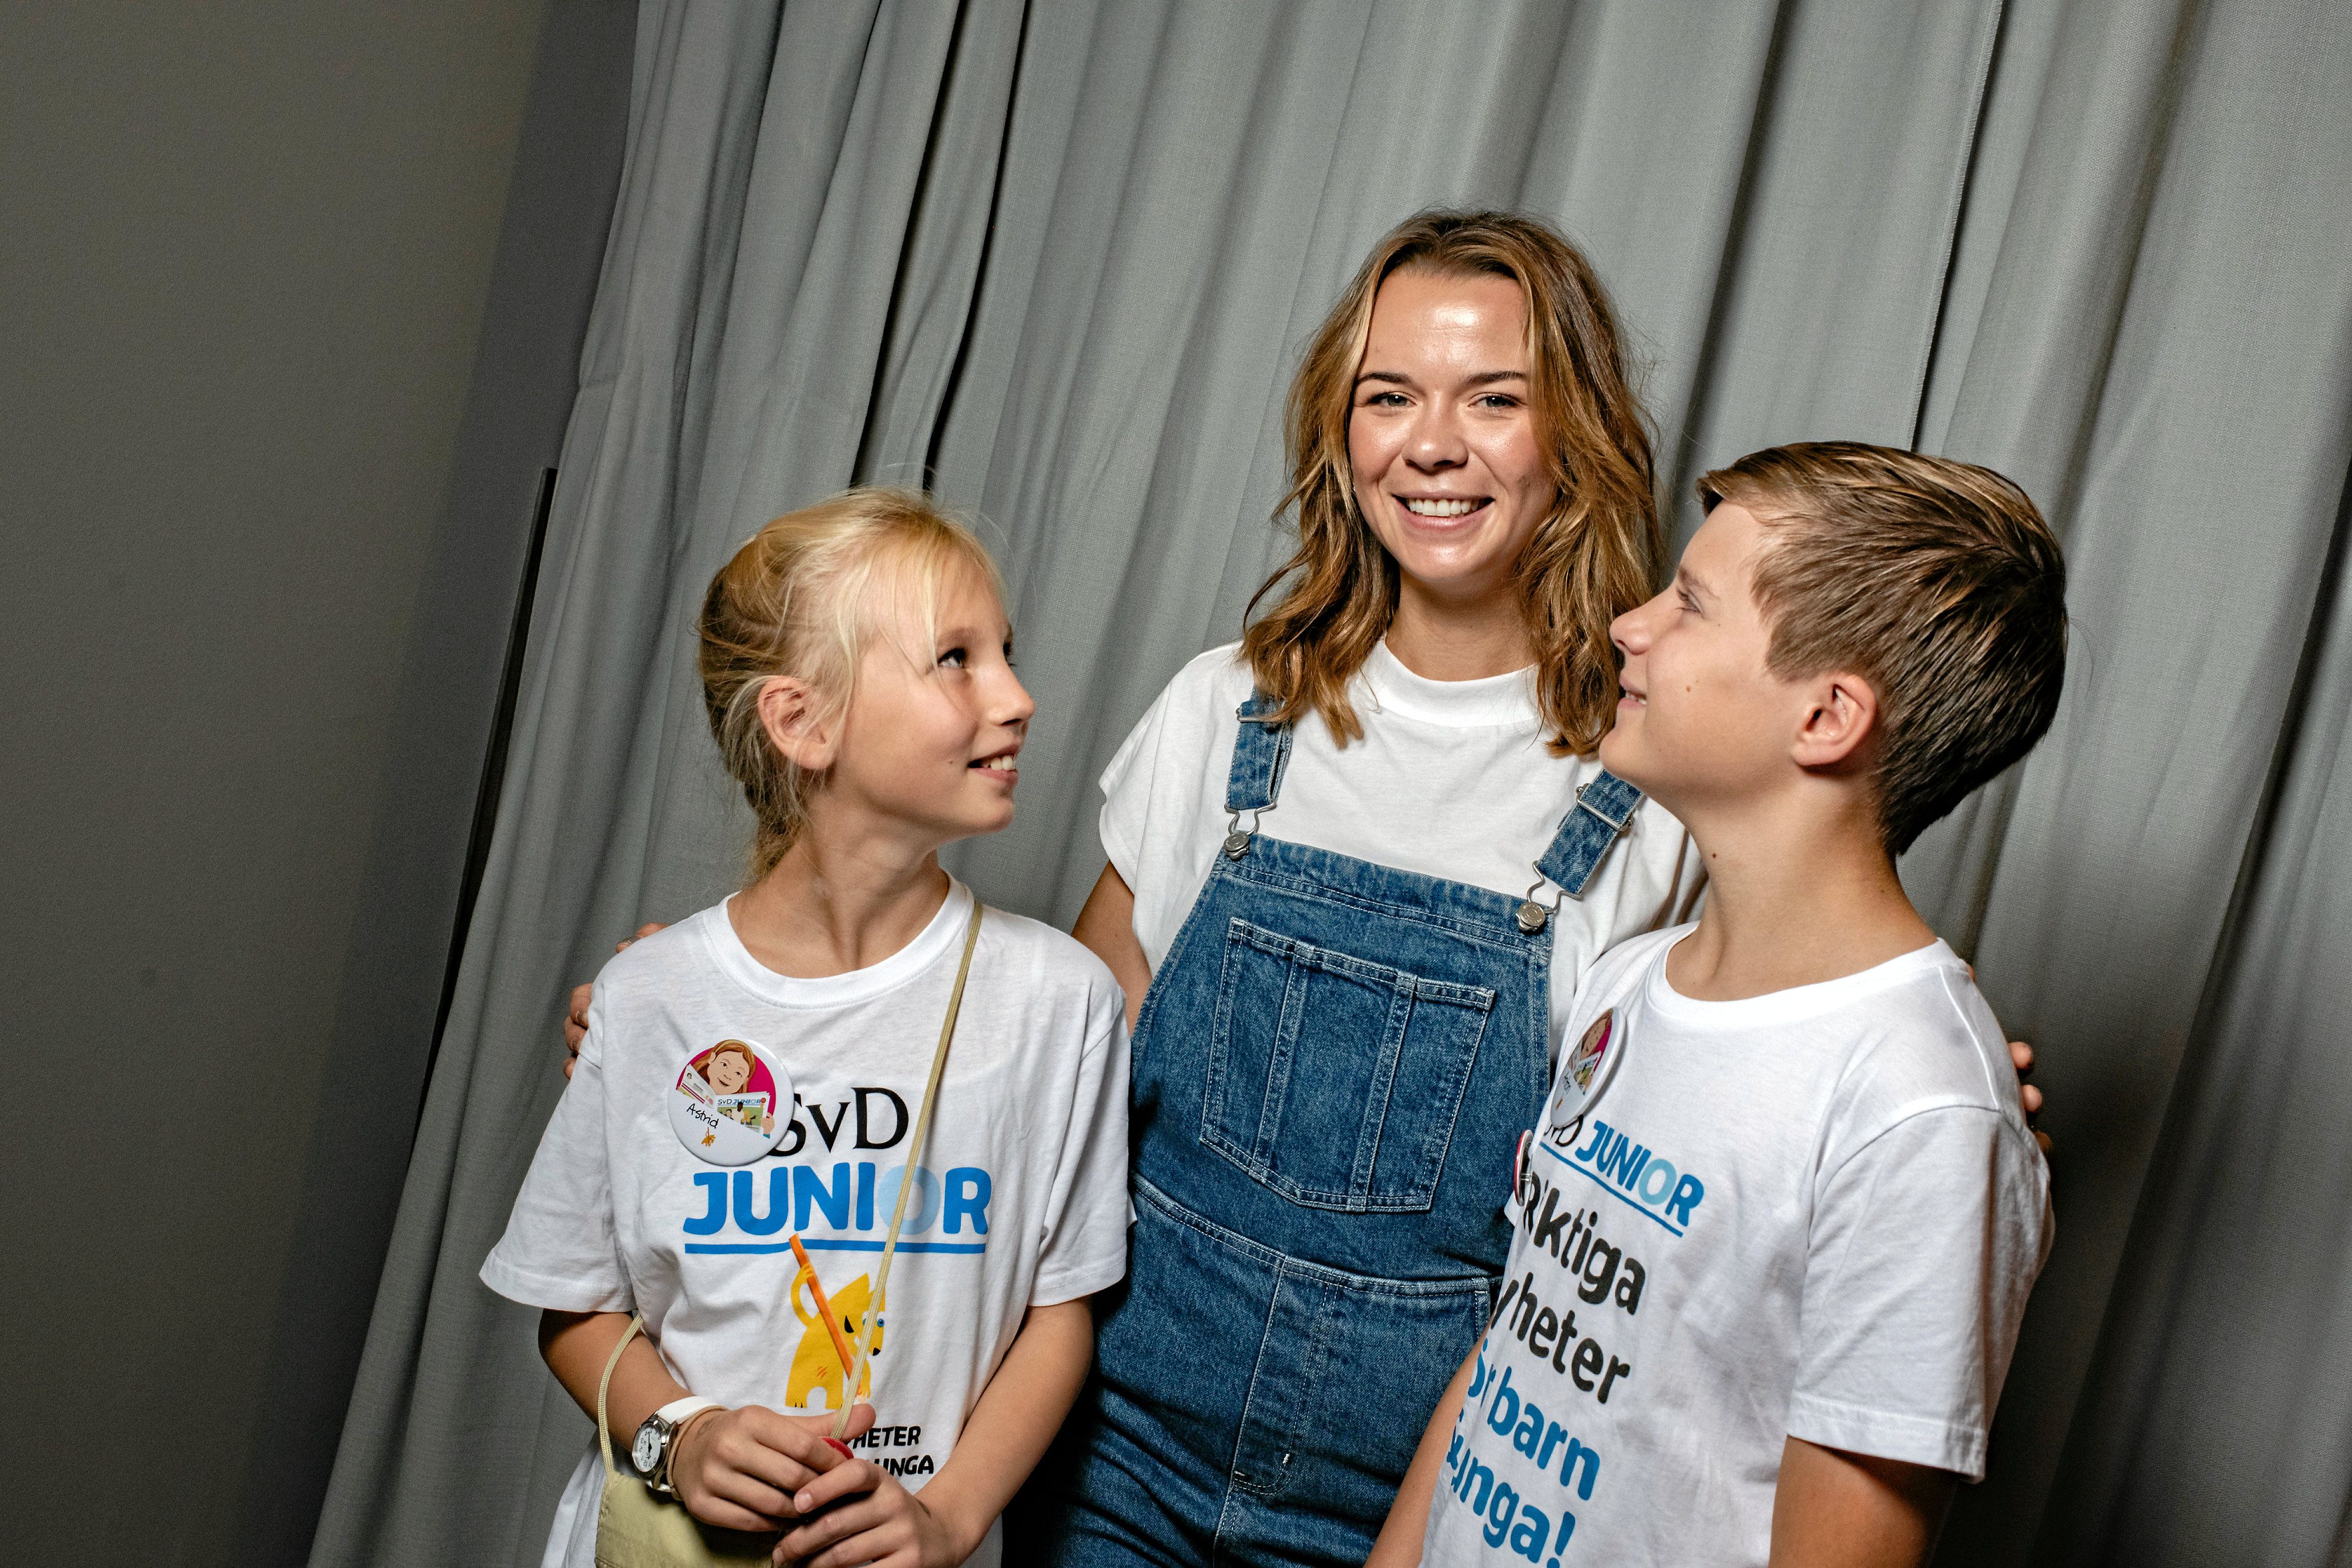 Juniorreportrarna Astrid och Anton hade förberett många frågor inför mötet med Margaux. De tyckte att det var spännande att träffa henne på Bokmässan i Göteborg.